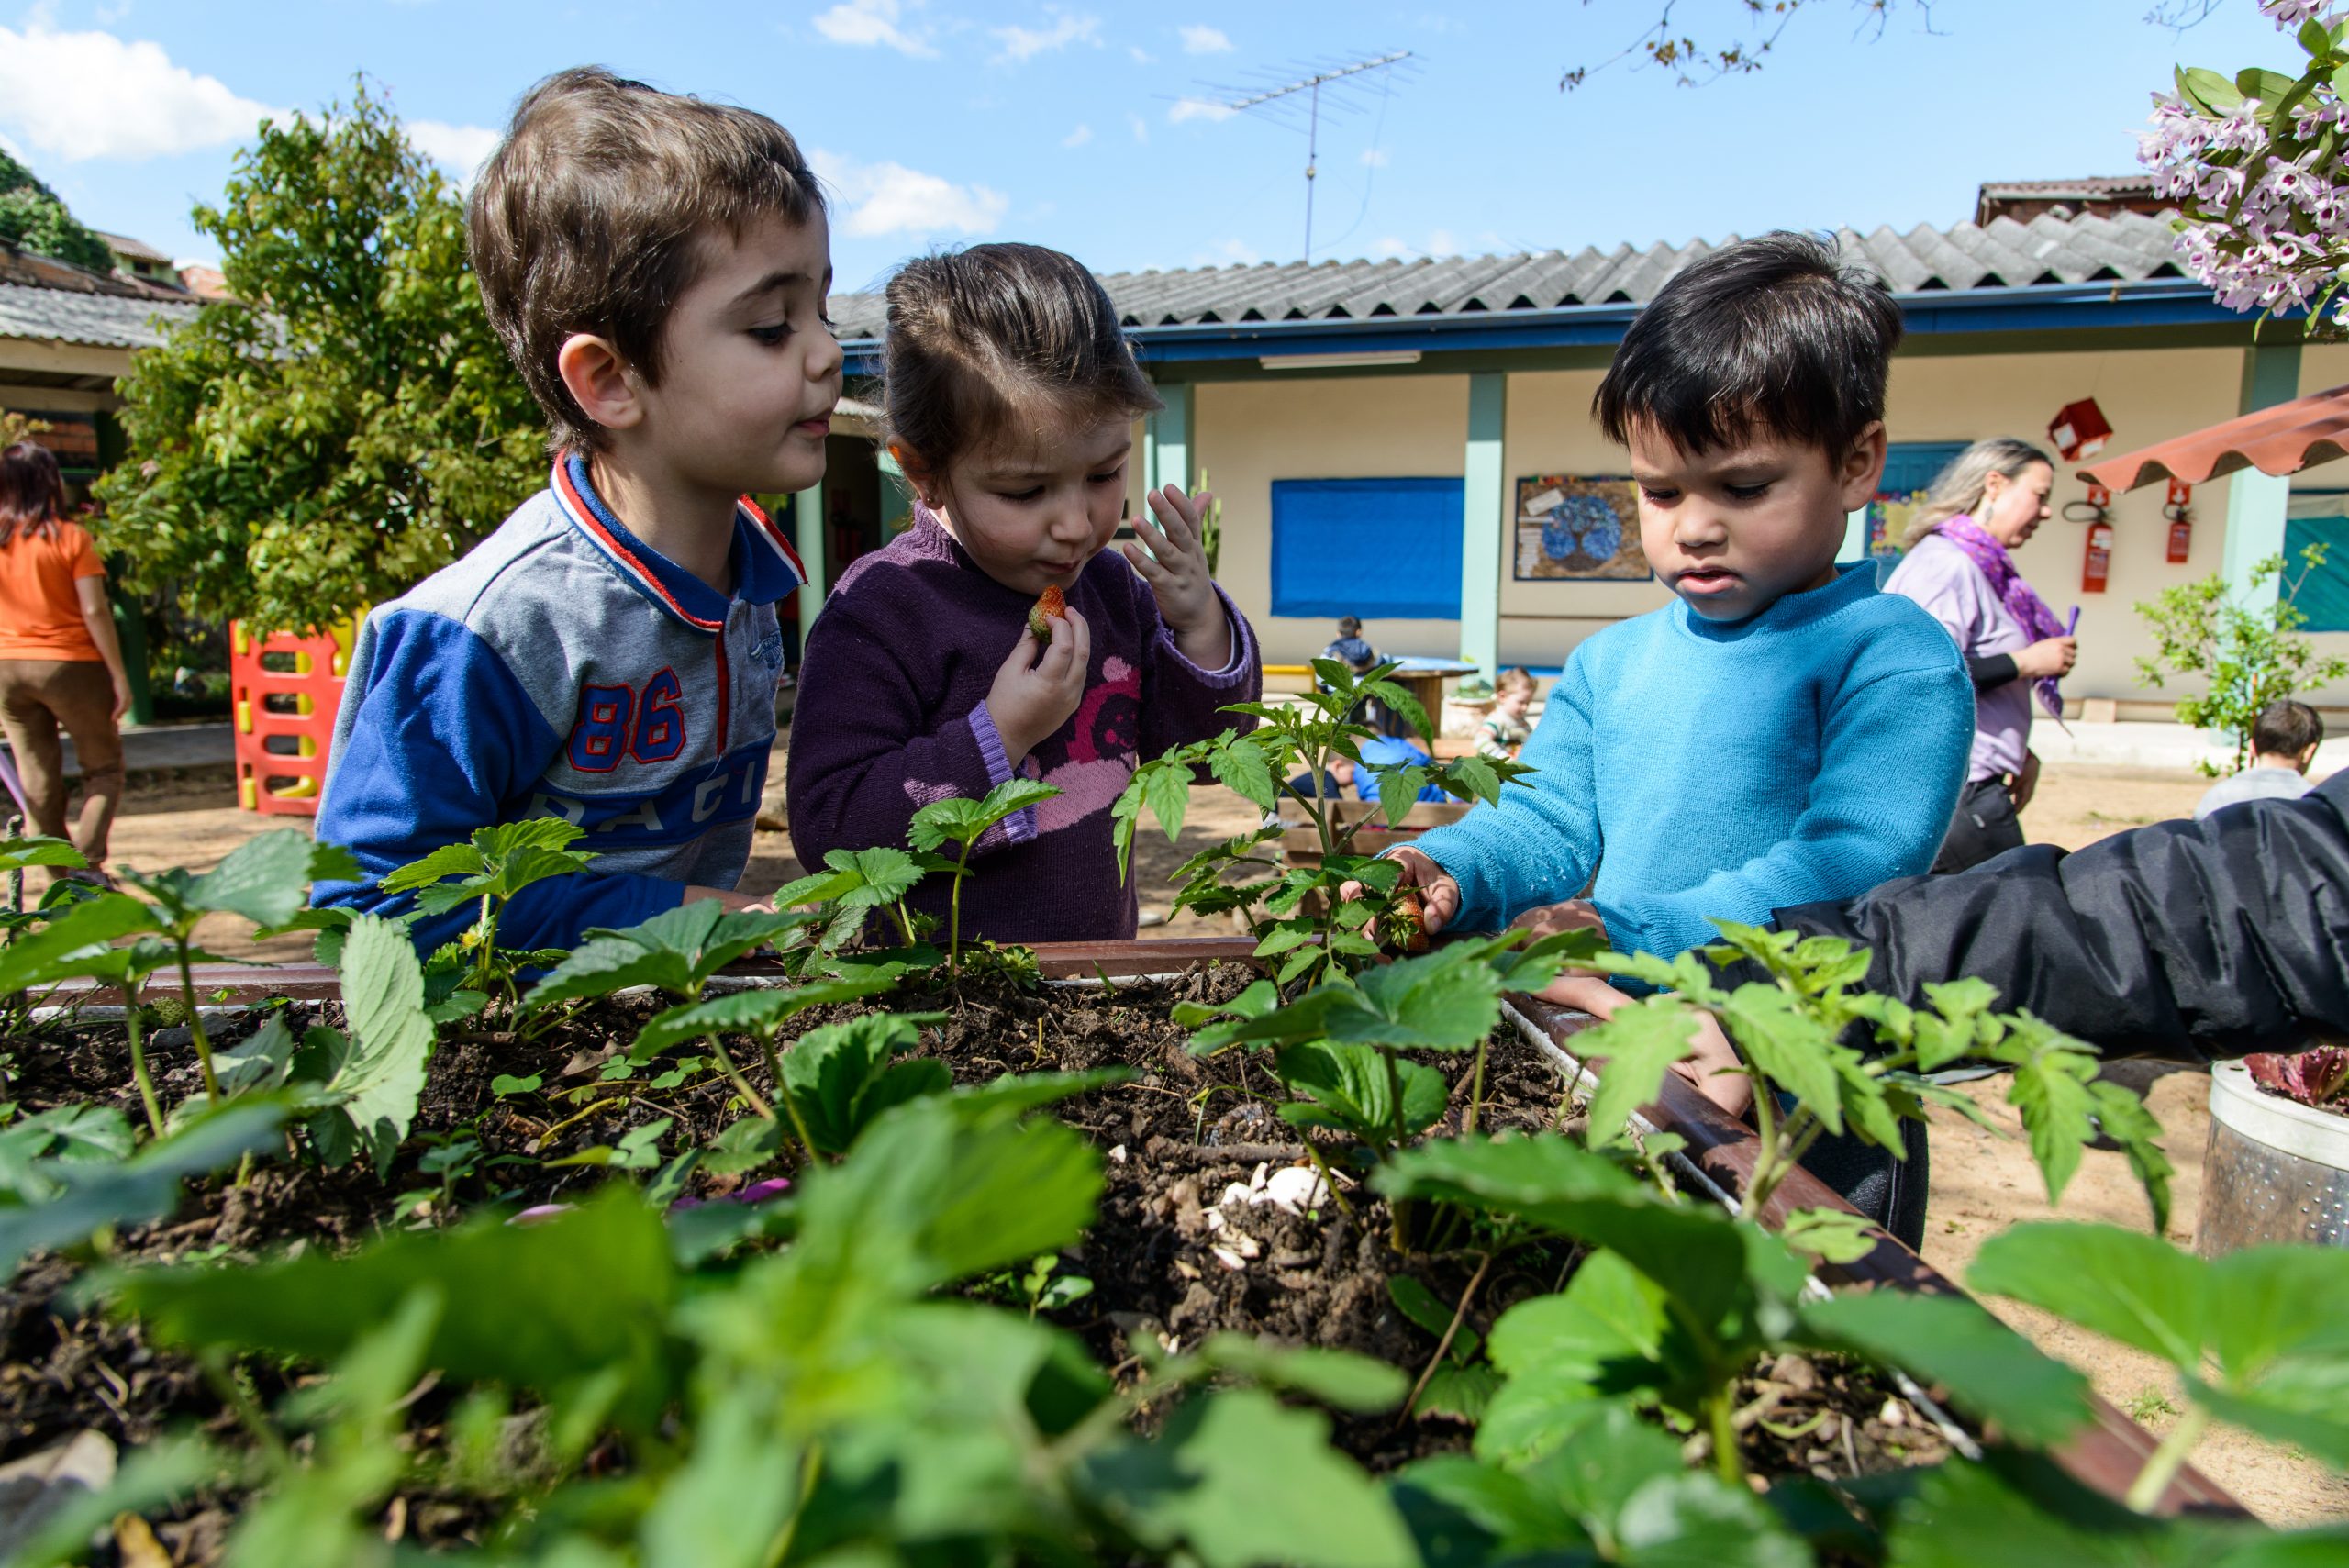 Três crianças observam um canteiro com plantas. Uma delas, colhe e come um morango.